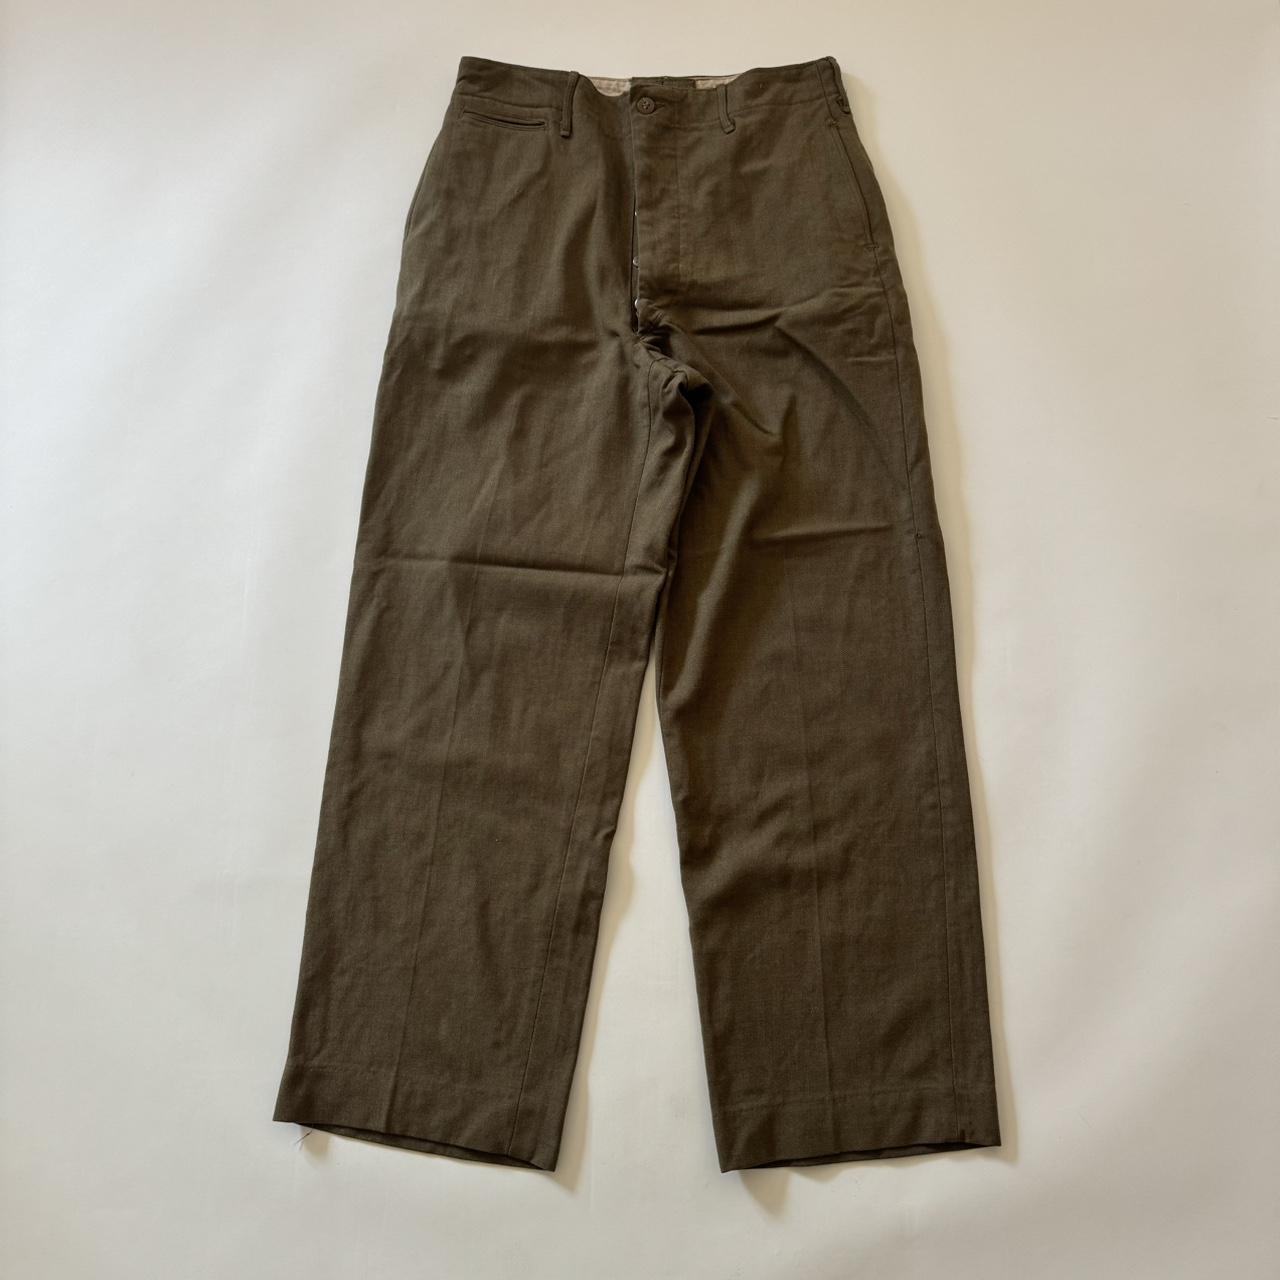 Vintage 40s Military Pants Wool Straight Wide Leg US... - Depop